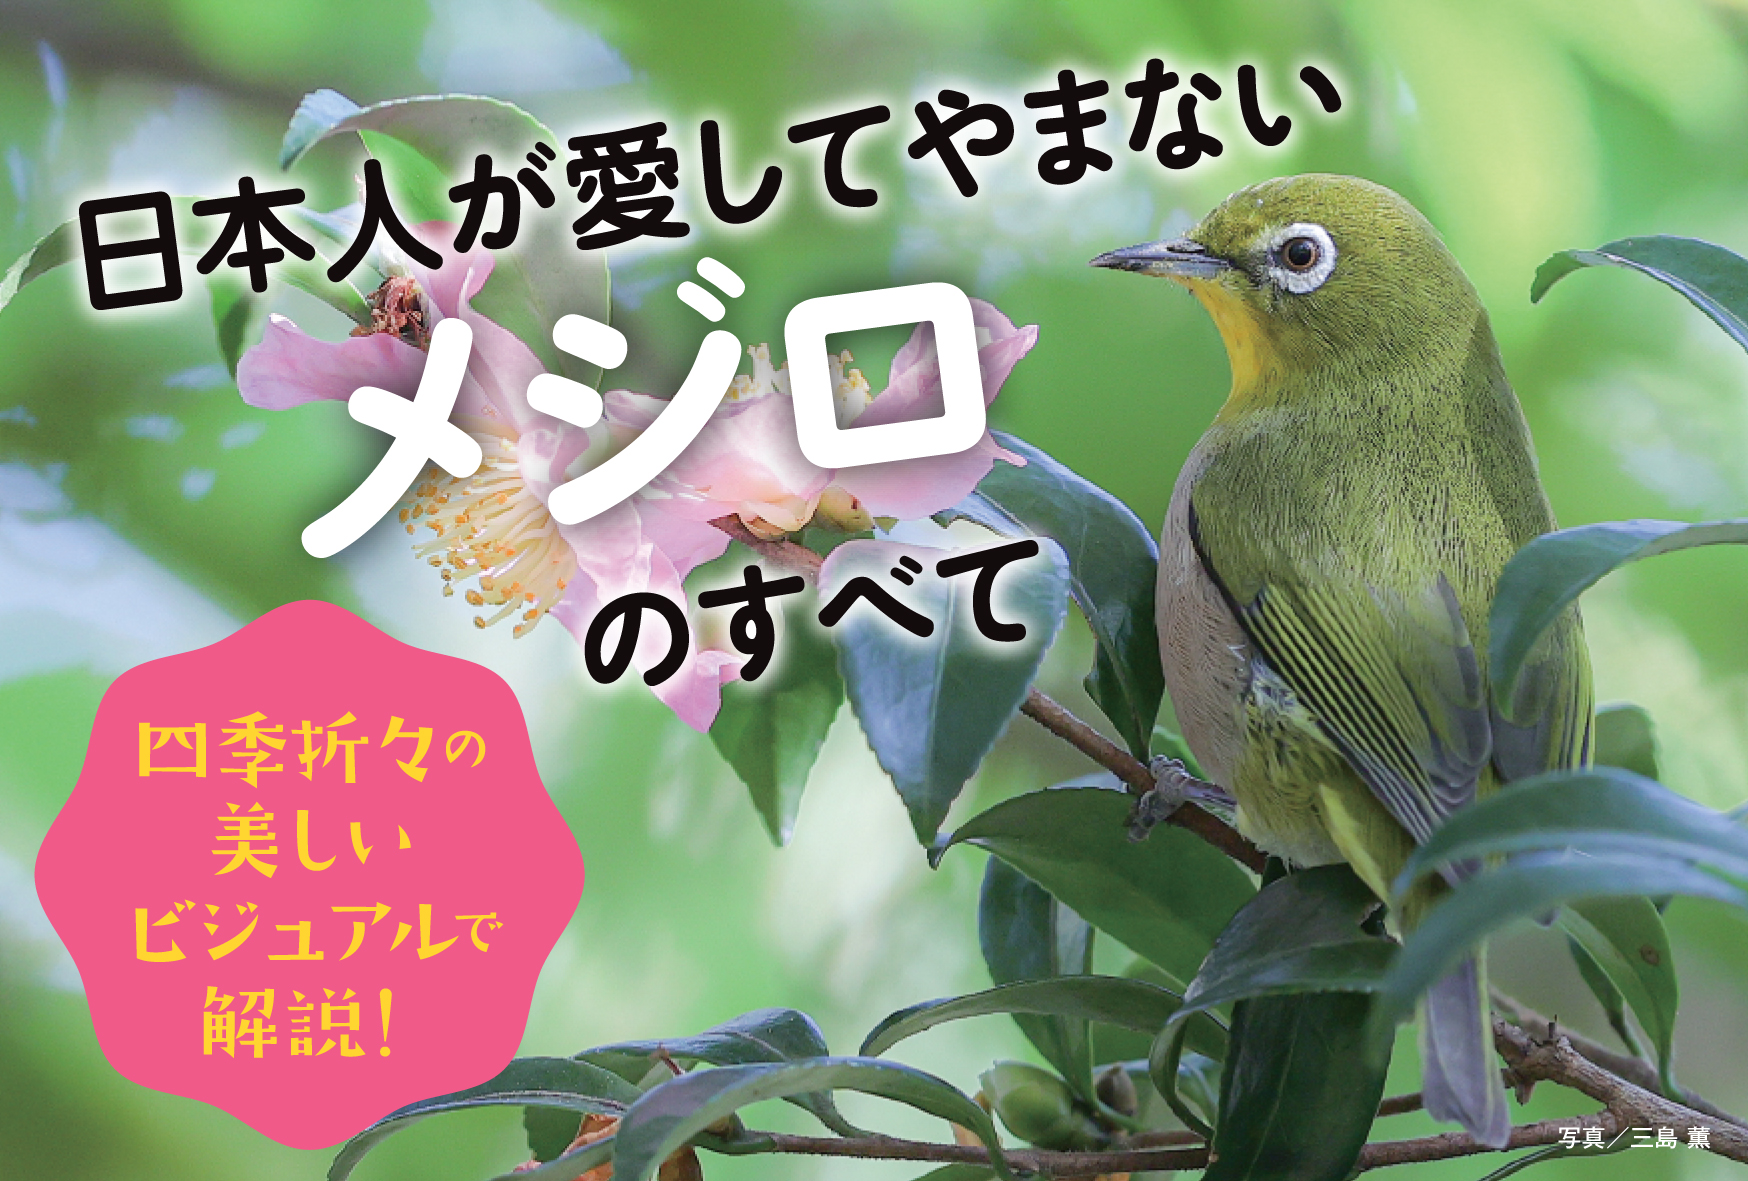 日本人が愛してきた野鳥、メジロの世界を大解剖！『にっぽんのメジロ